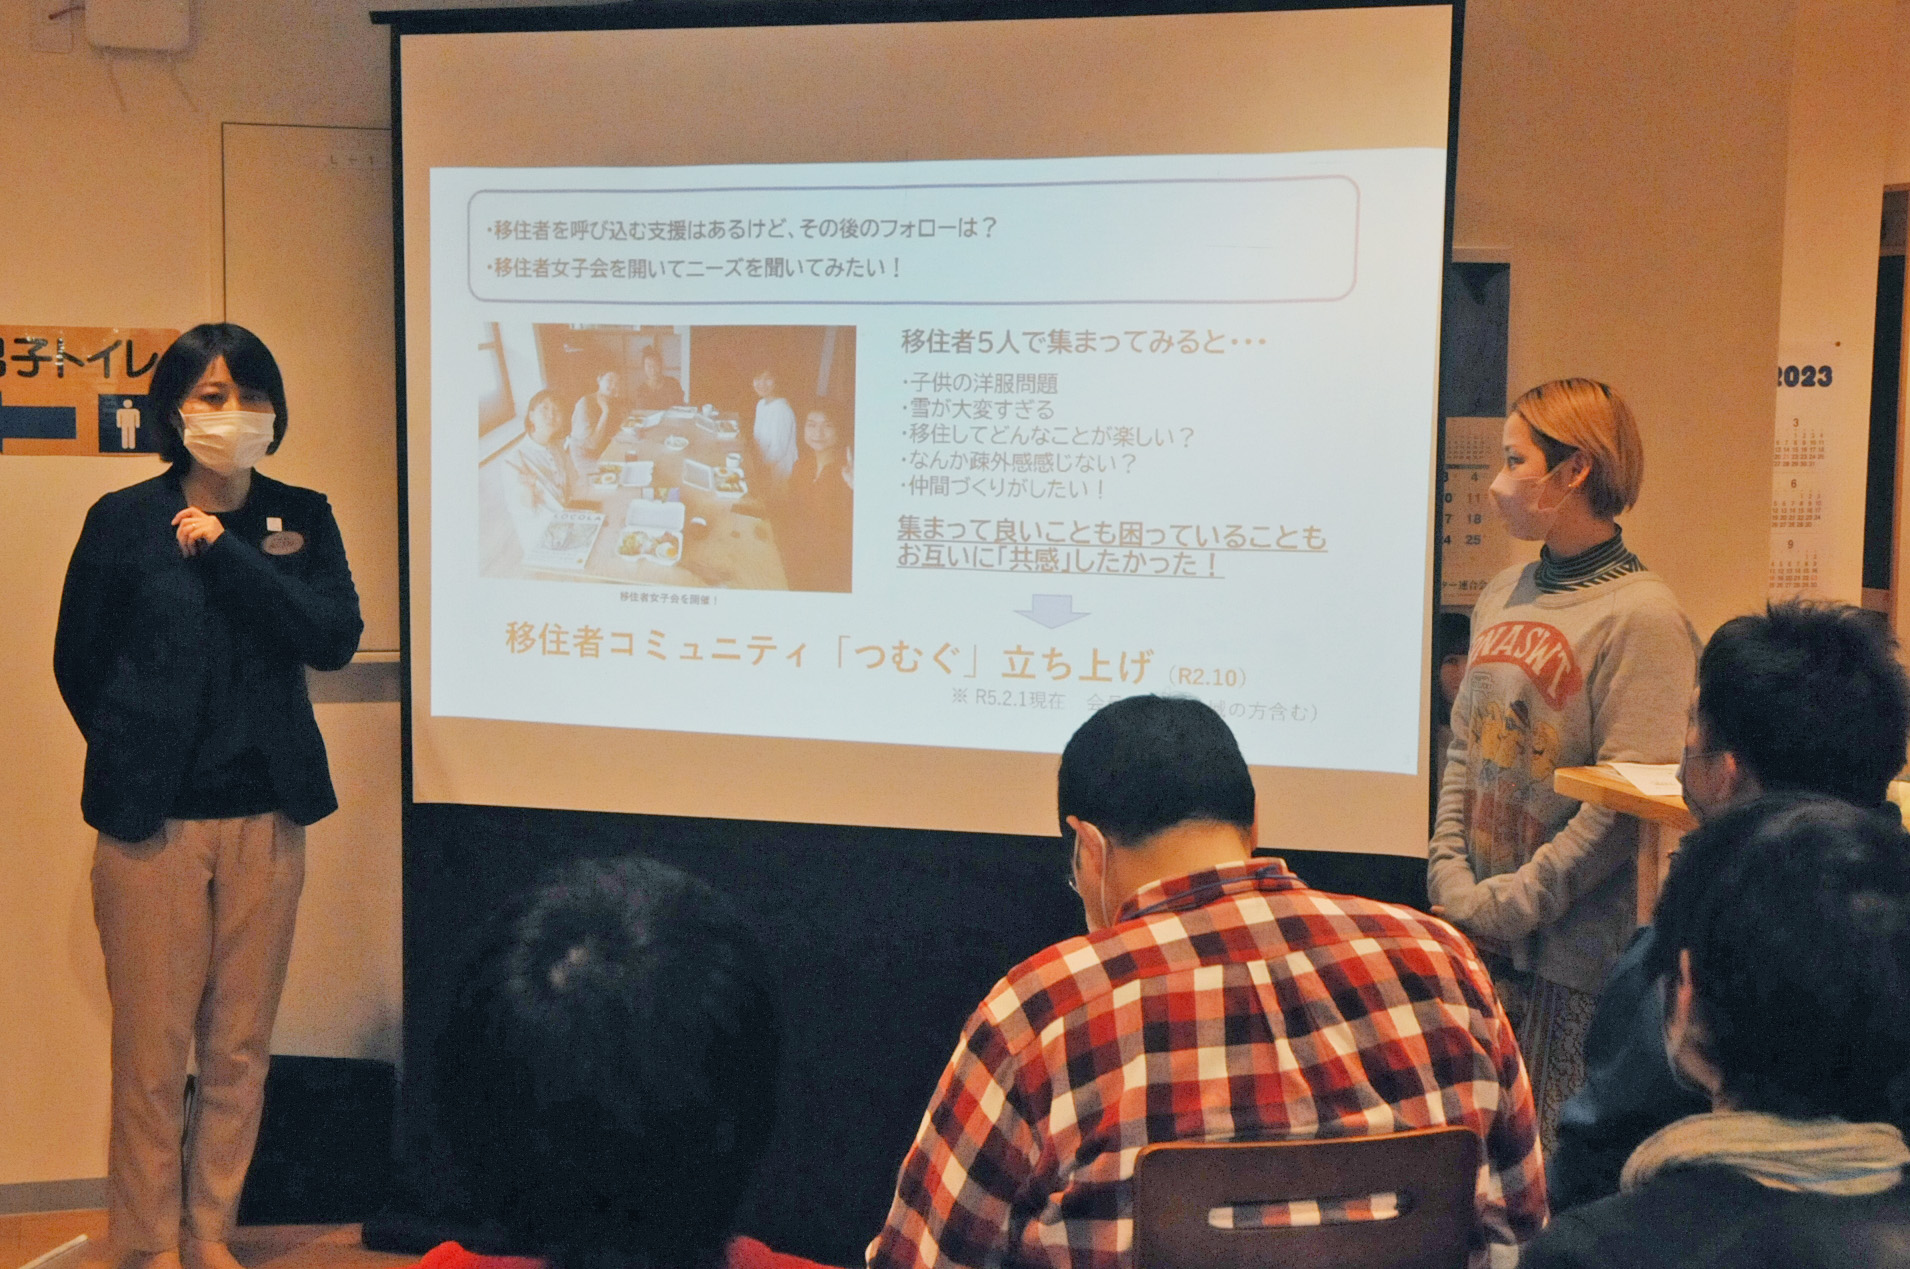 小国町総合政策課 政策企画担当係長 横山真由美さんによる講演